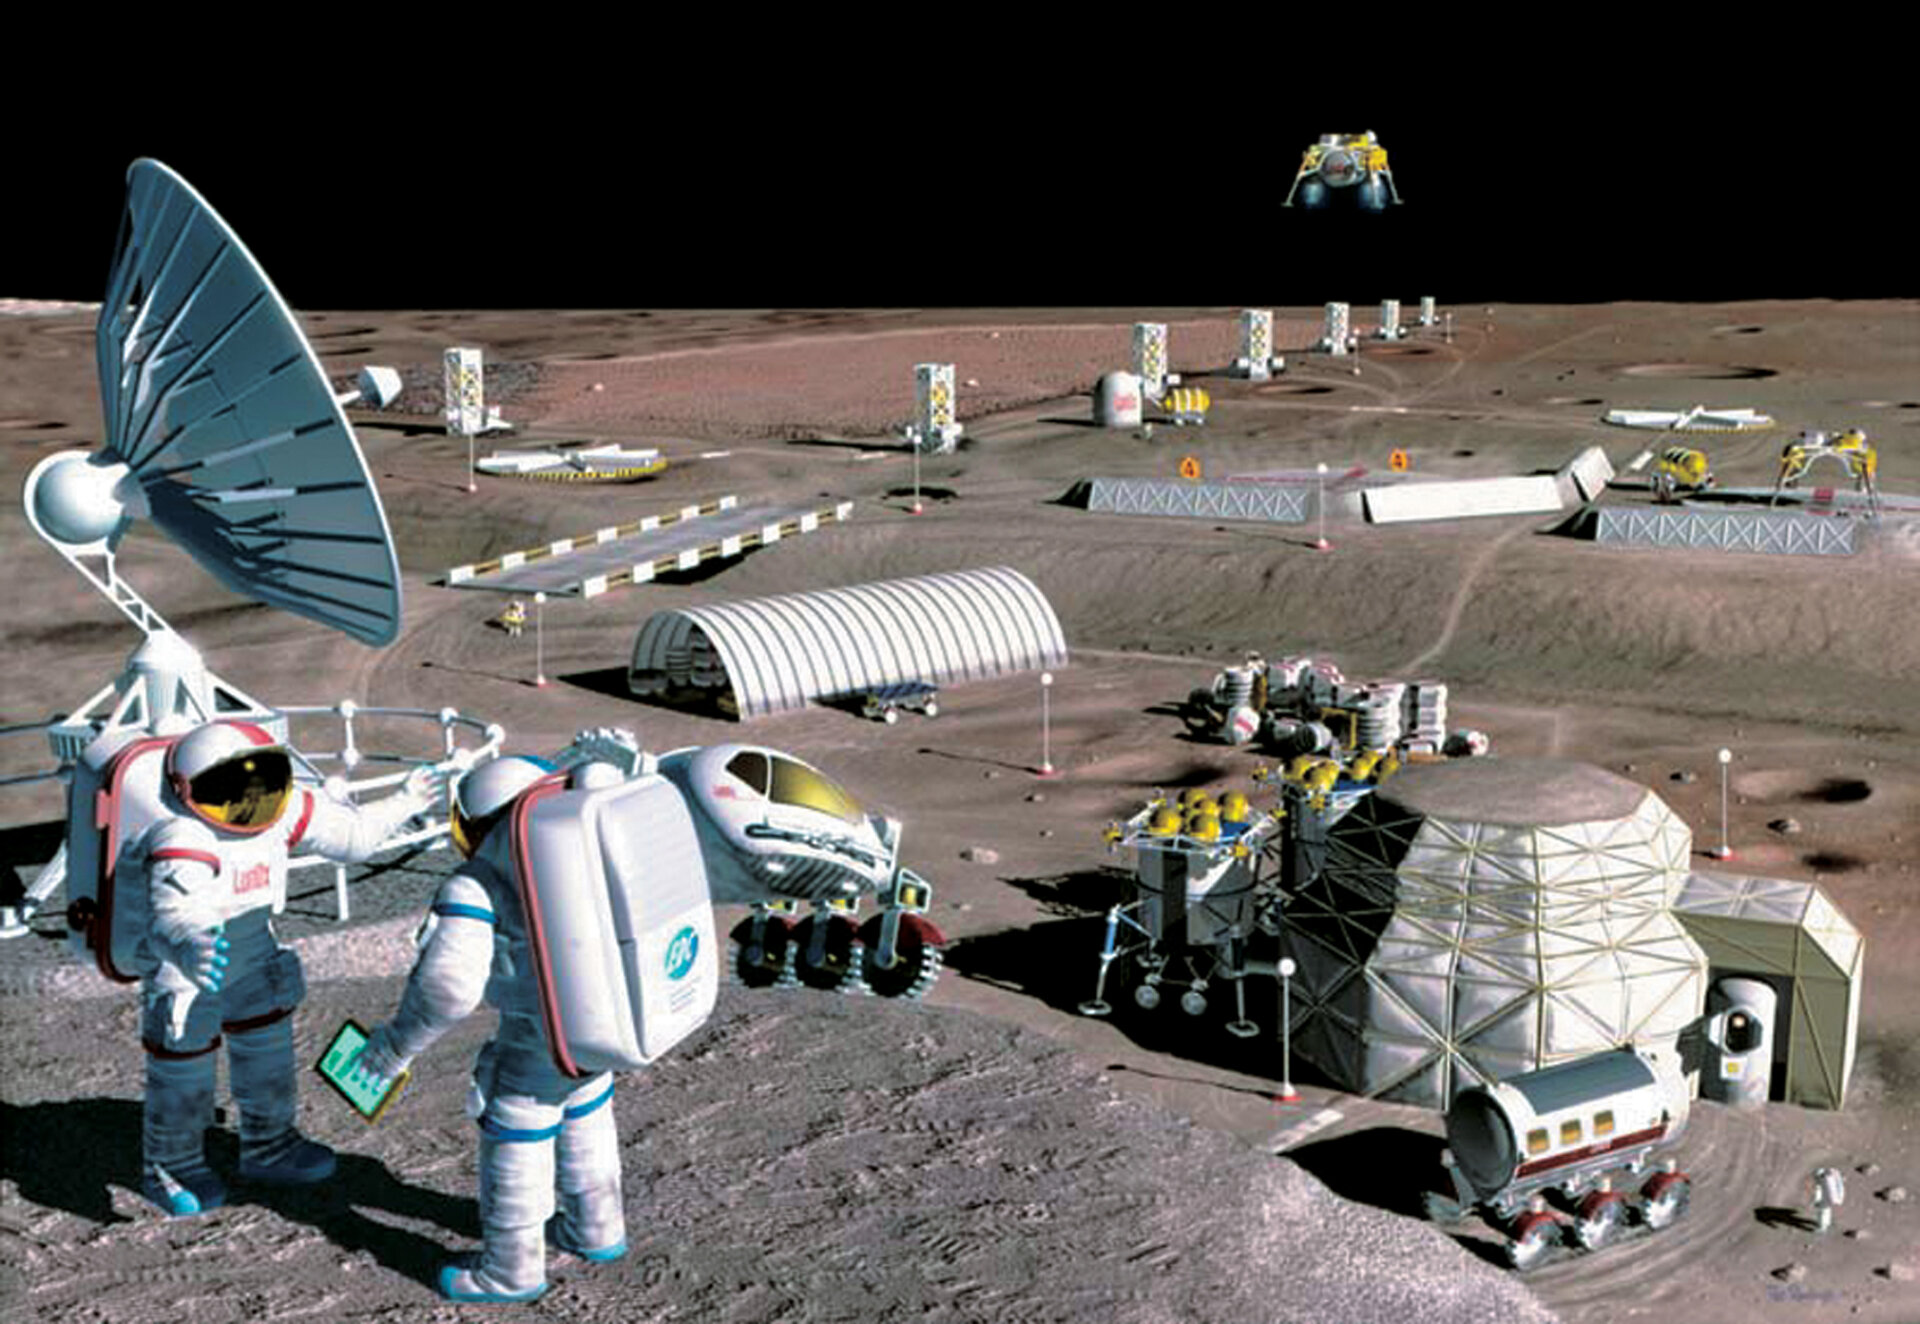 Future activities on the Moon